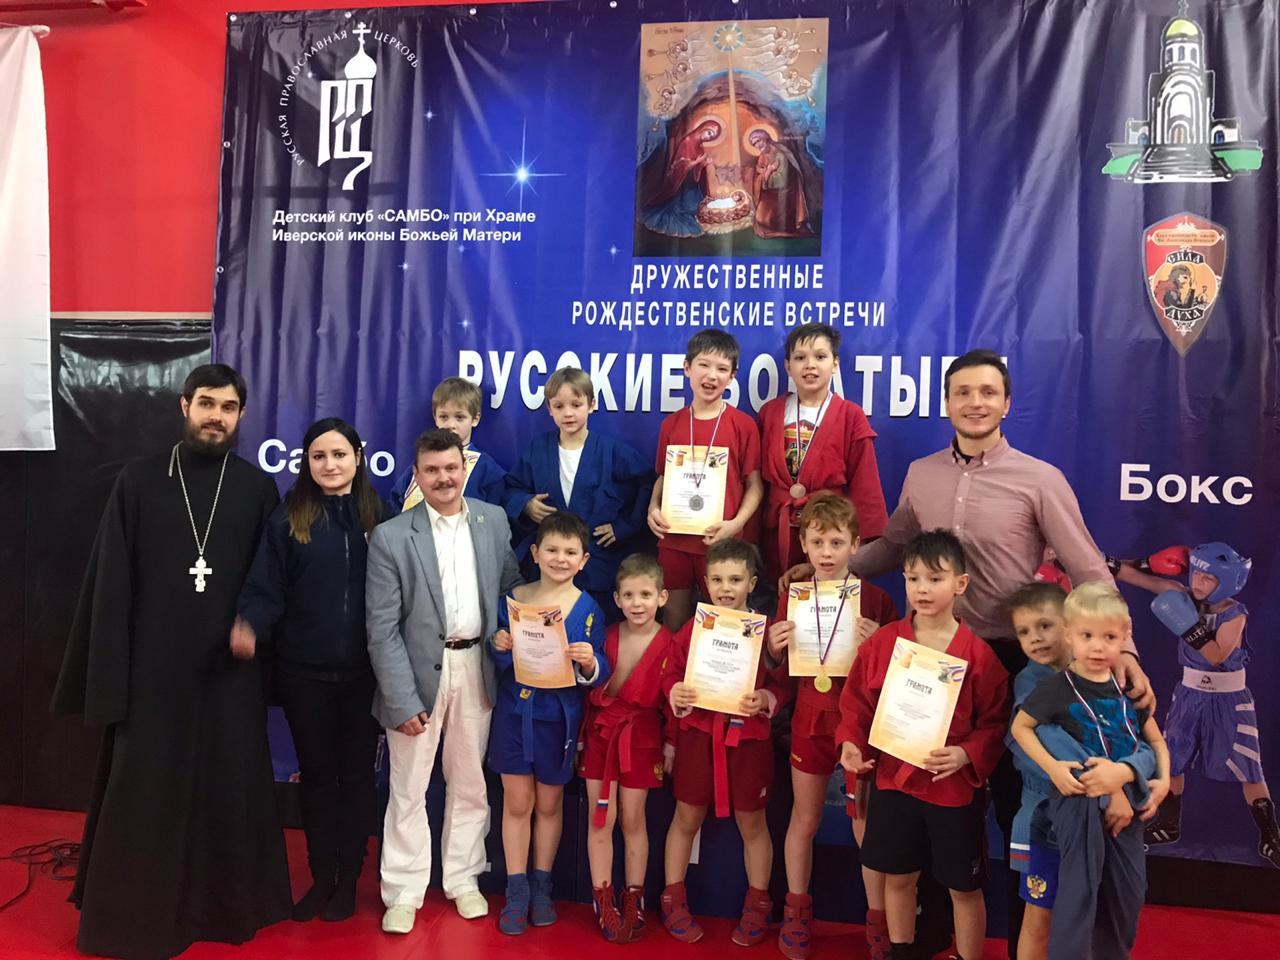 Поздравляем команду «Сила Духа» показавшую достойные результаты в рождественском турнире по самбо и боксу «Русские Богатыри».